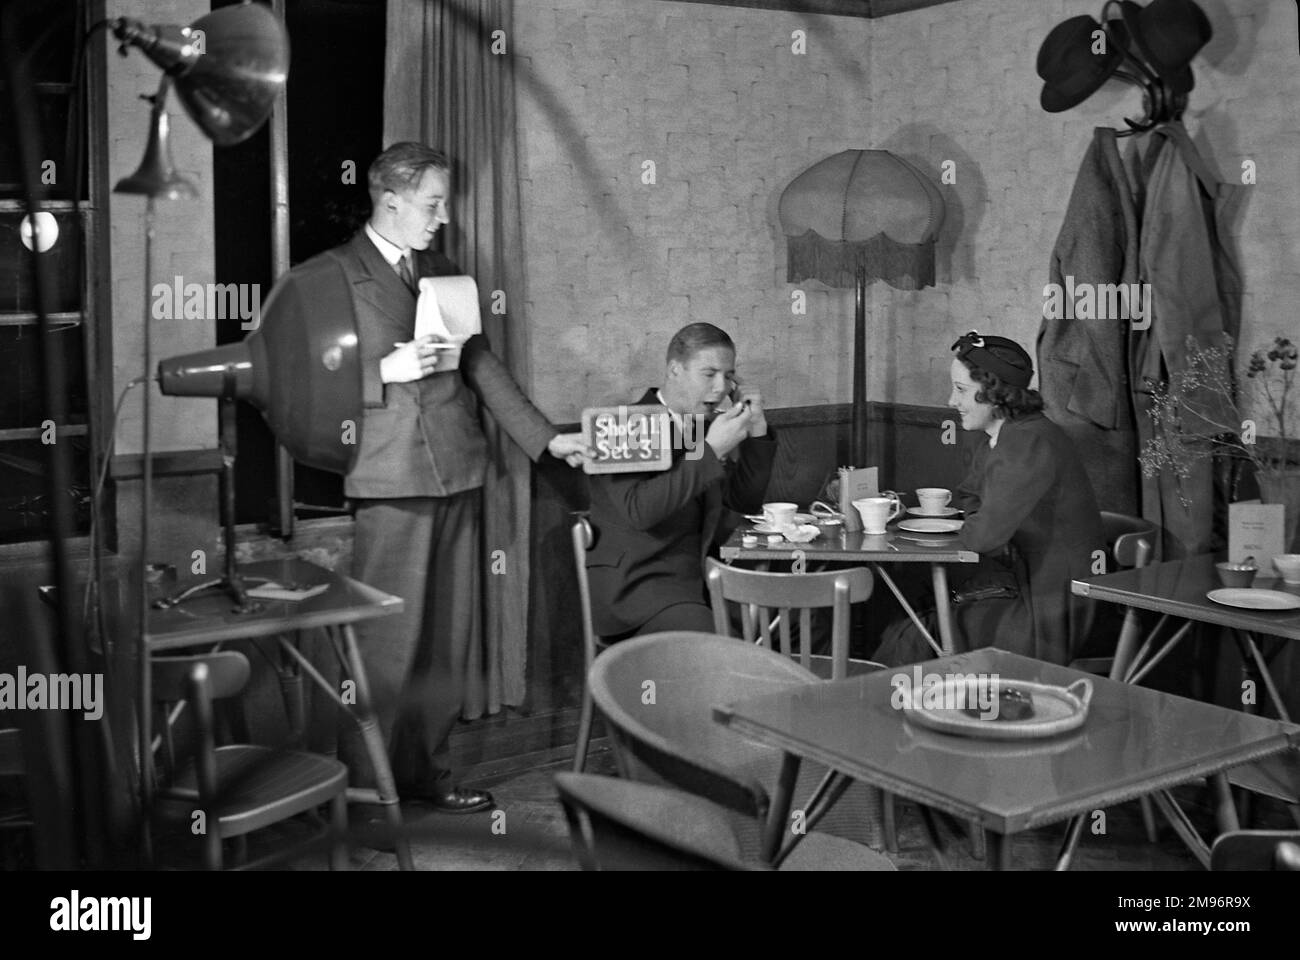 Casting et équipe sur un ensemble de film -- un homme et une femme s'assoient à une table, tandis qu'un autre homme tient une ardoise (photo 11, photo 3). Banque D'Images